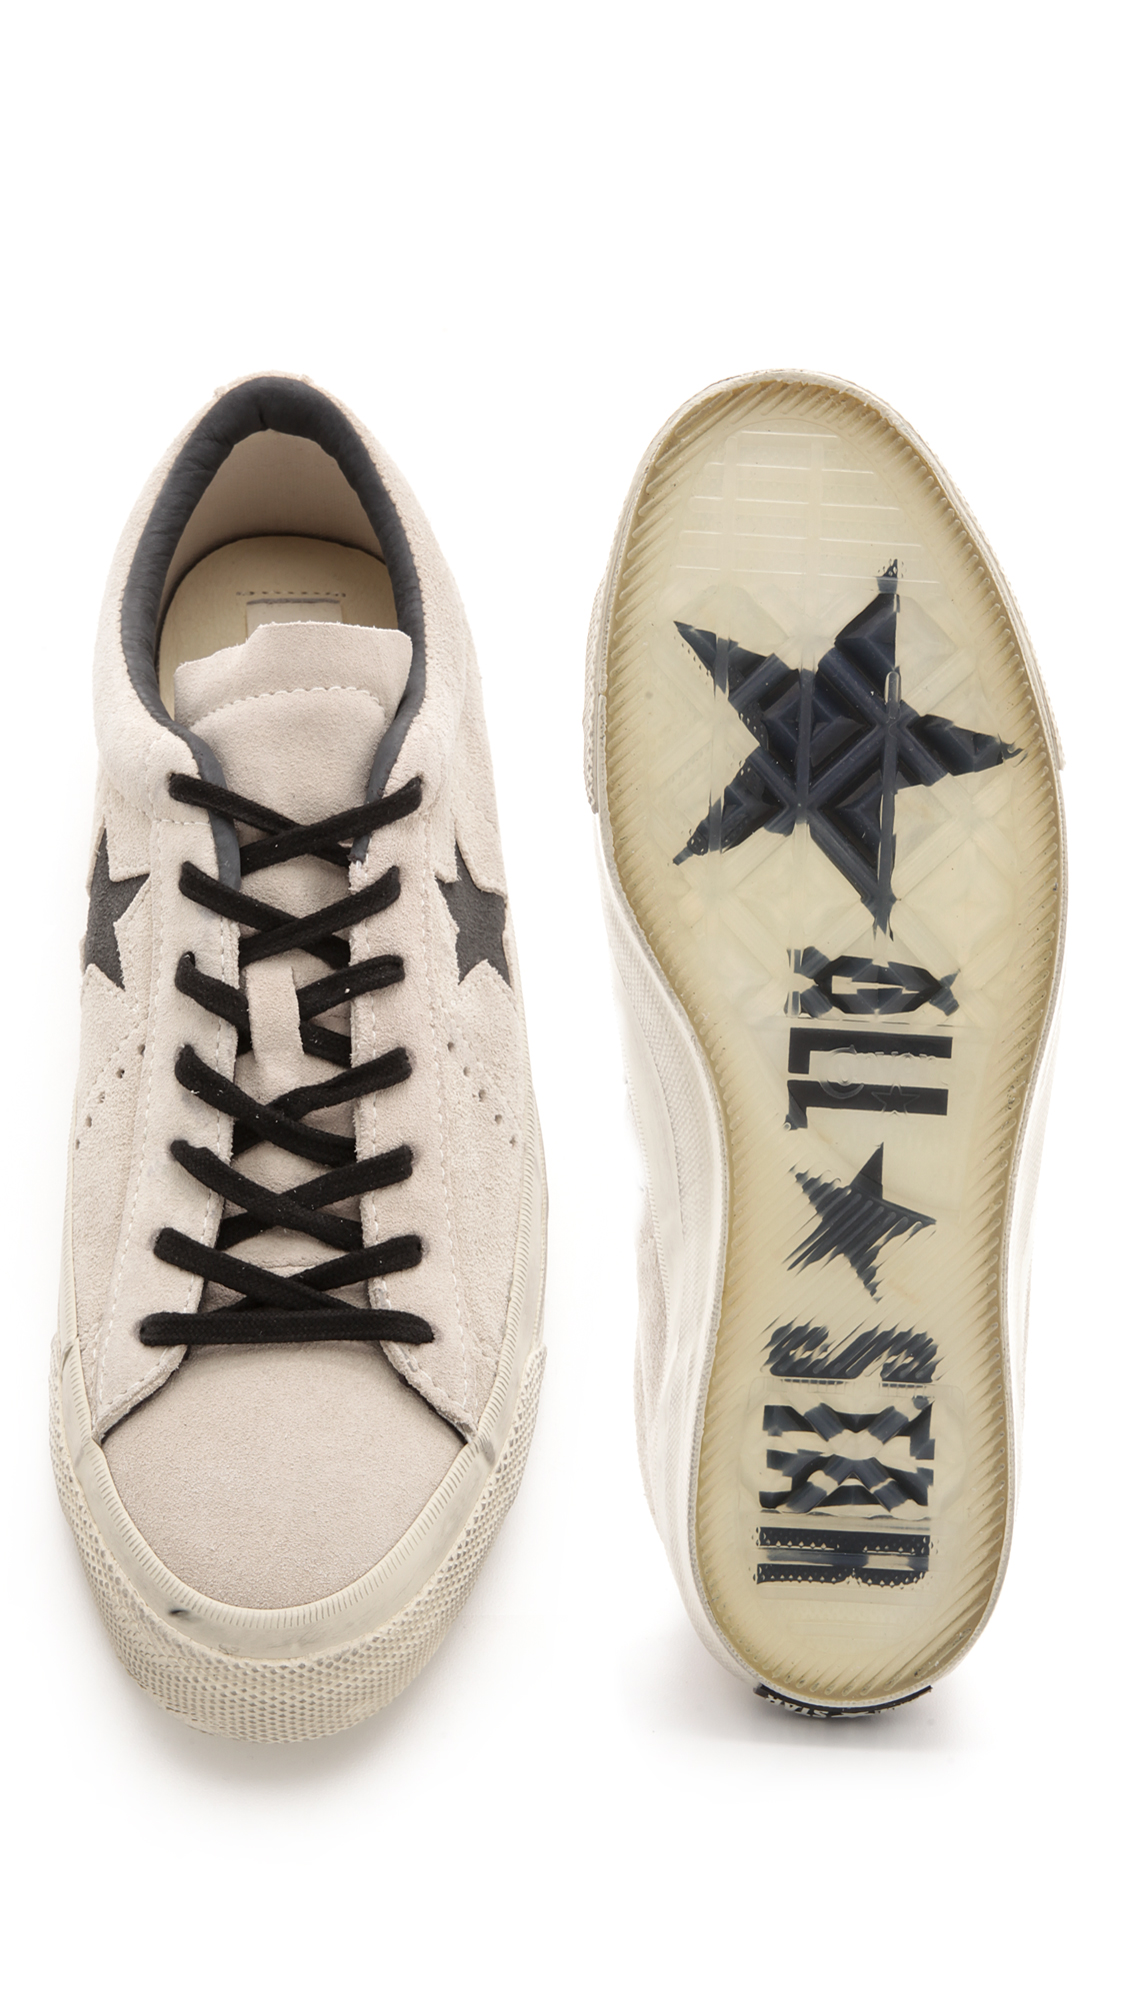 Converse john varvatos one star converse x john varvatos one star suede sneakers | east dane VLLVLBE